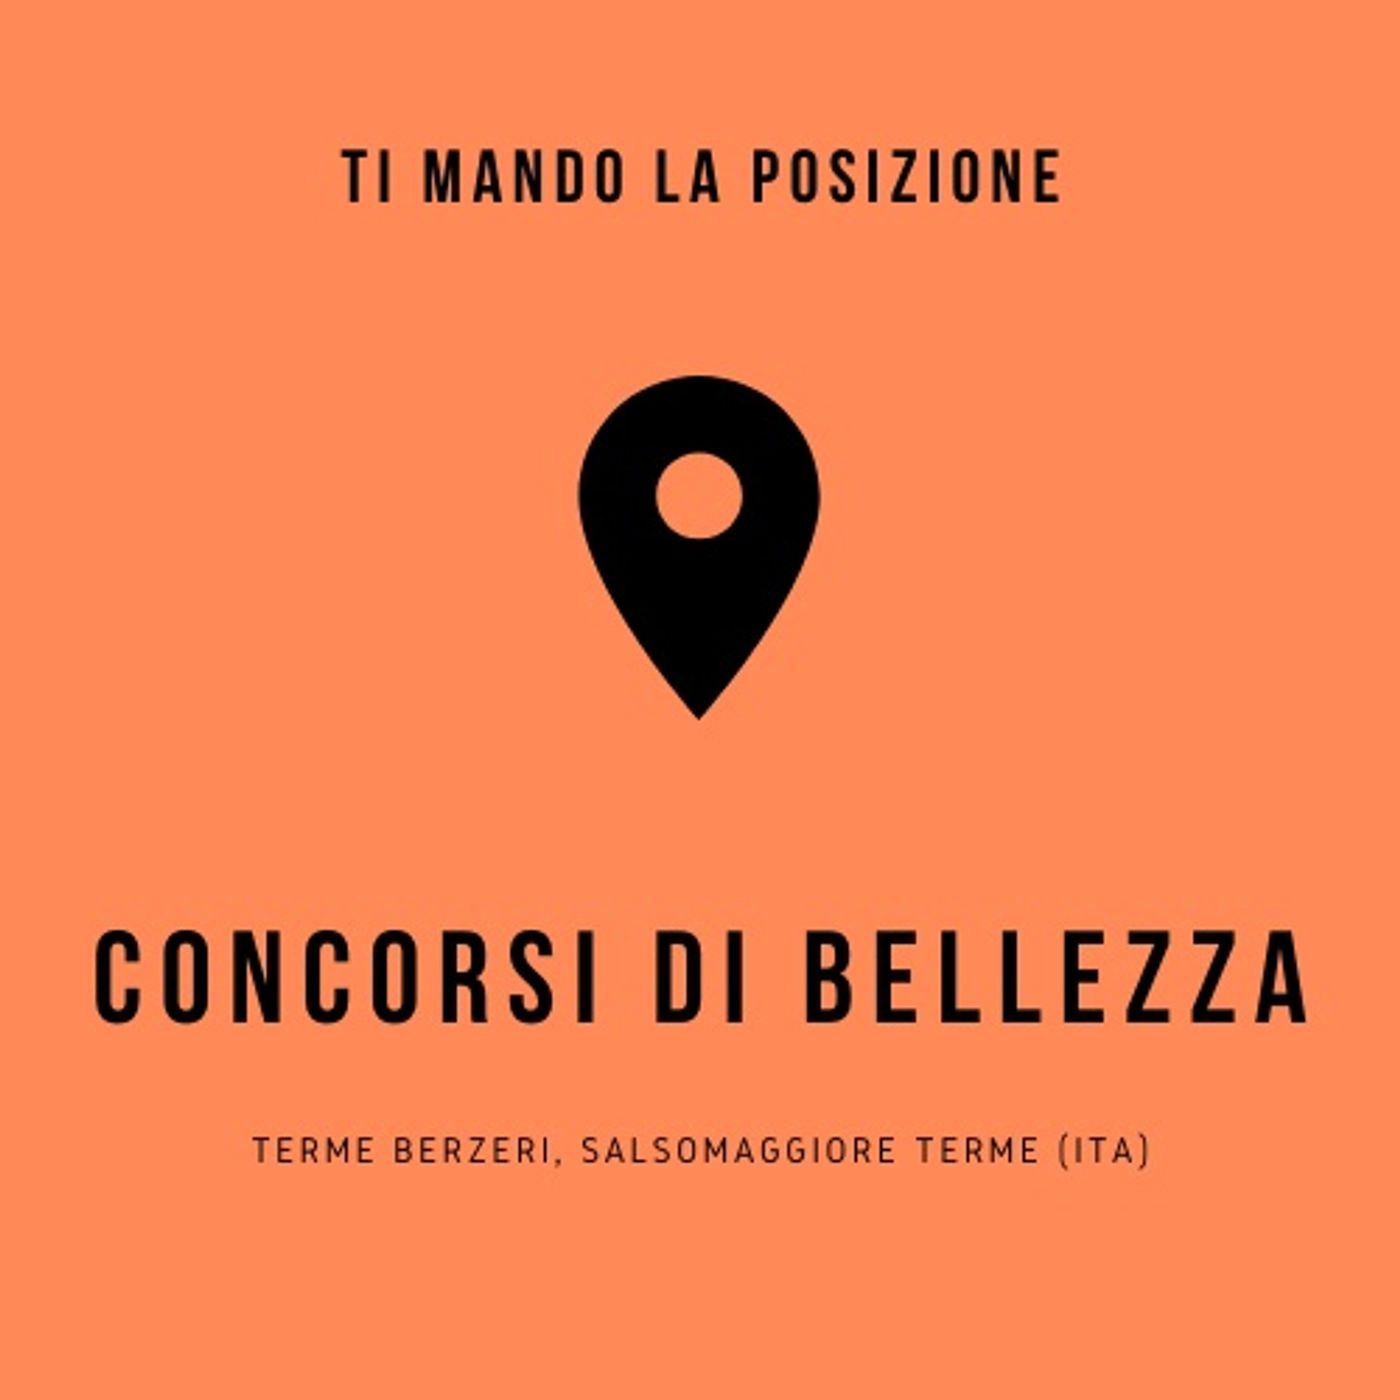 Concorsi di bellezza - Terme Berzeri, Salsomaggiore Terme (ITA)